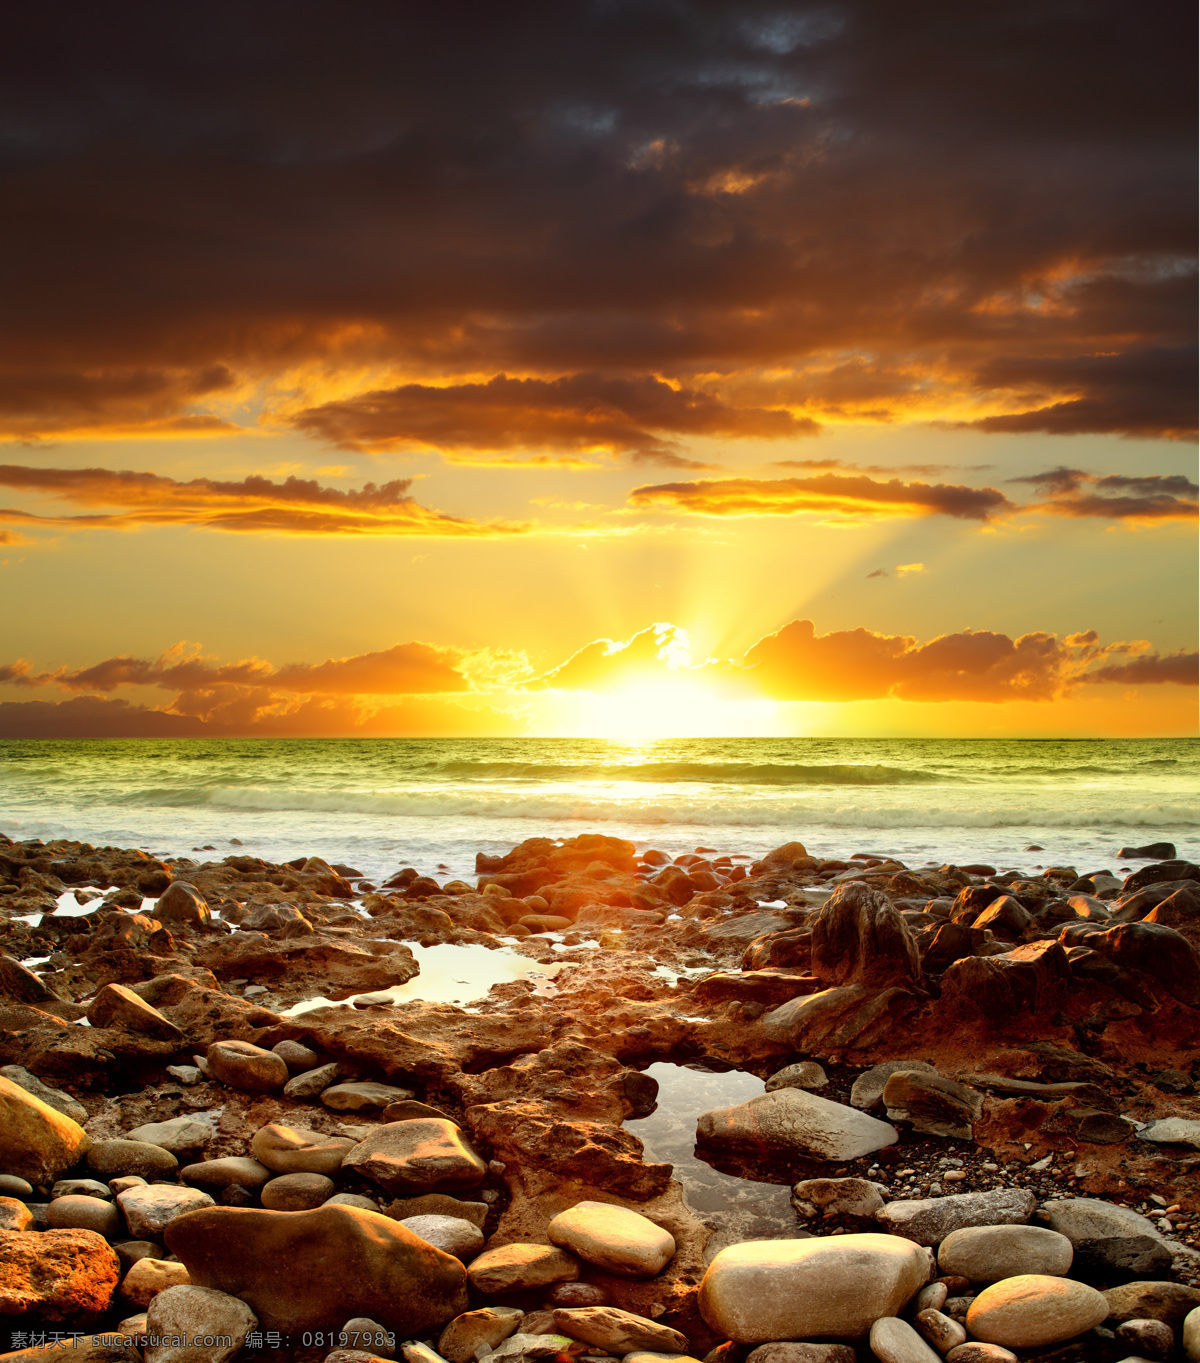 朝阳海洋风景 石滩 朝阳 红日 海洋 大海 天空 云彩 波浪 海浪 海洋风光 海洋风景 自然风景 自然景观